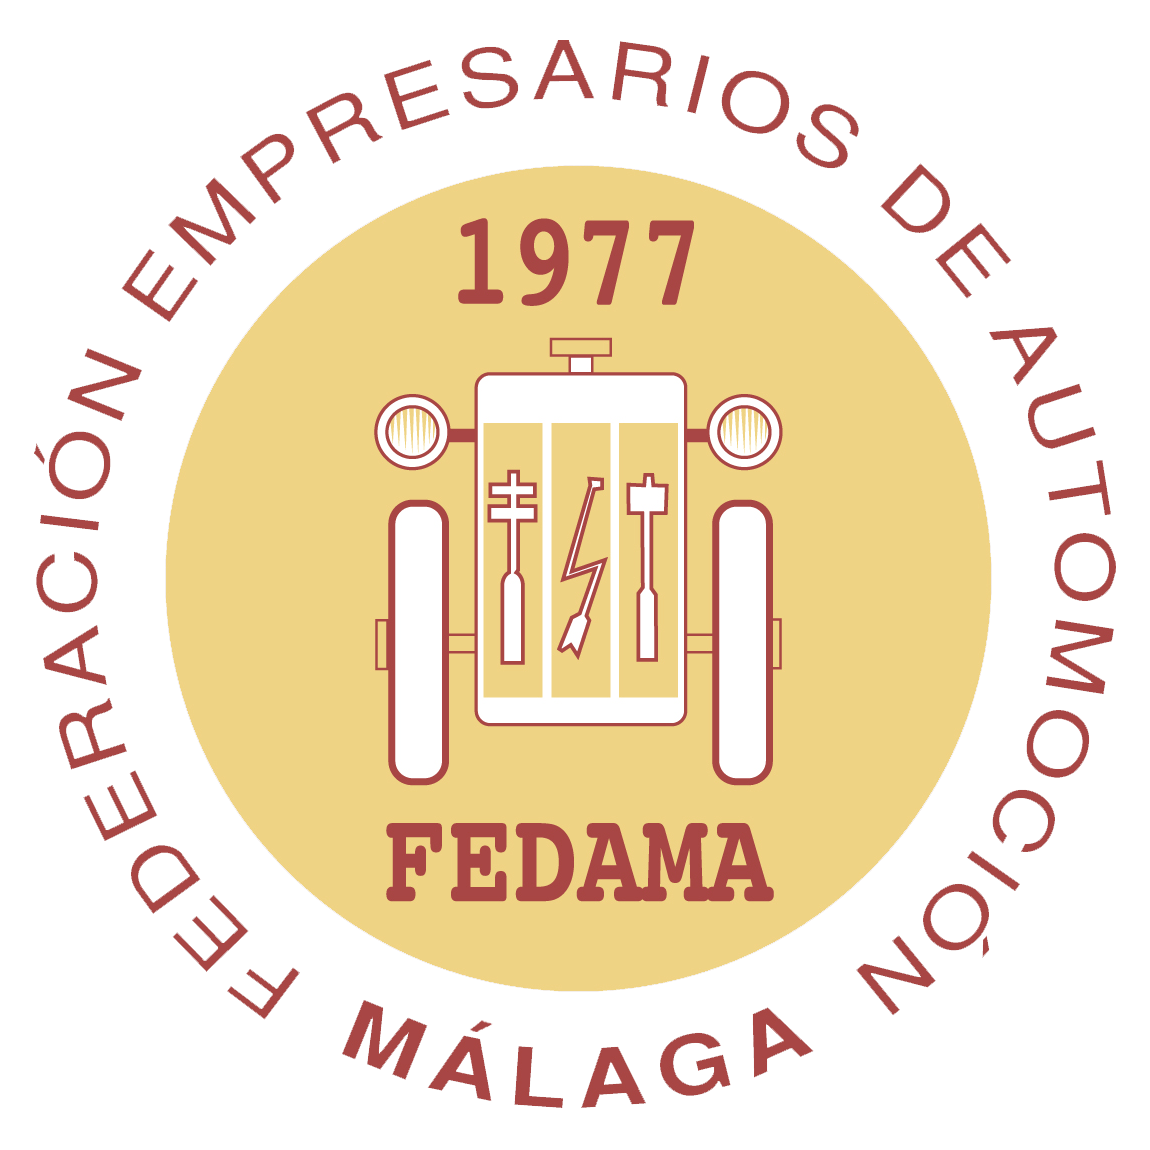 Logo de FEDAMA, Federación de Empresarios de Automoción de Málaga